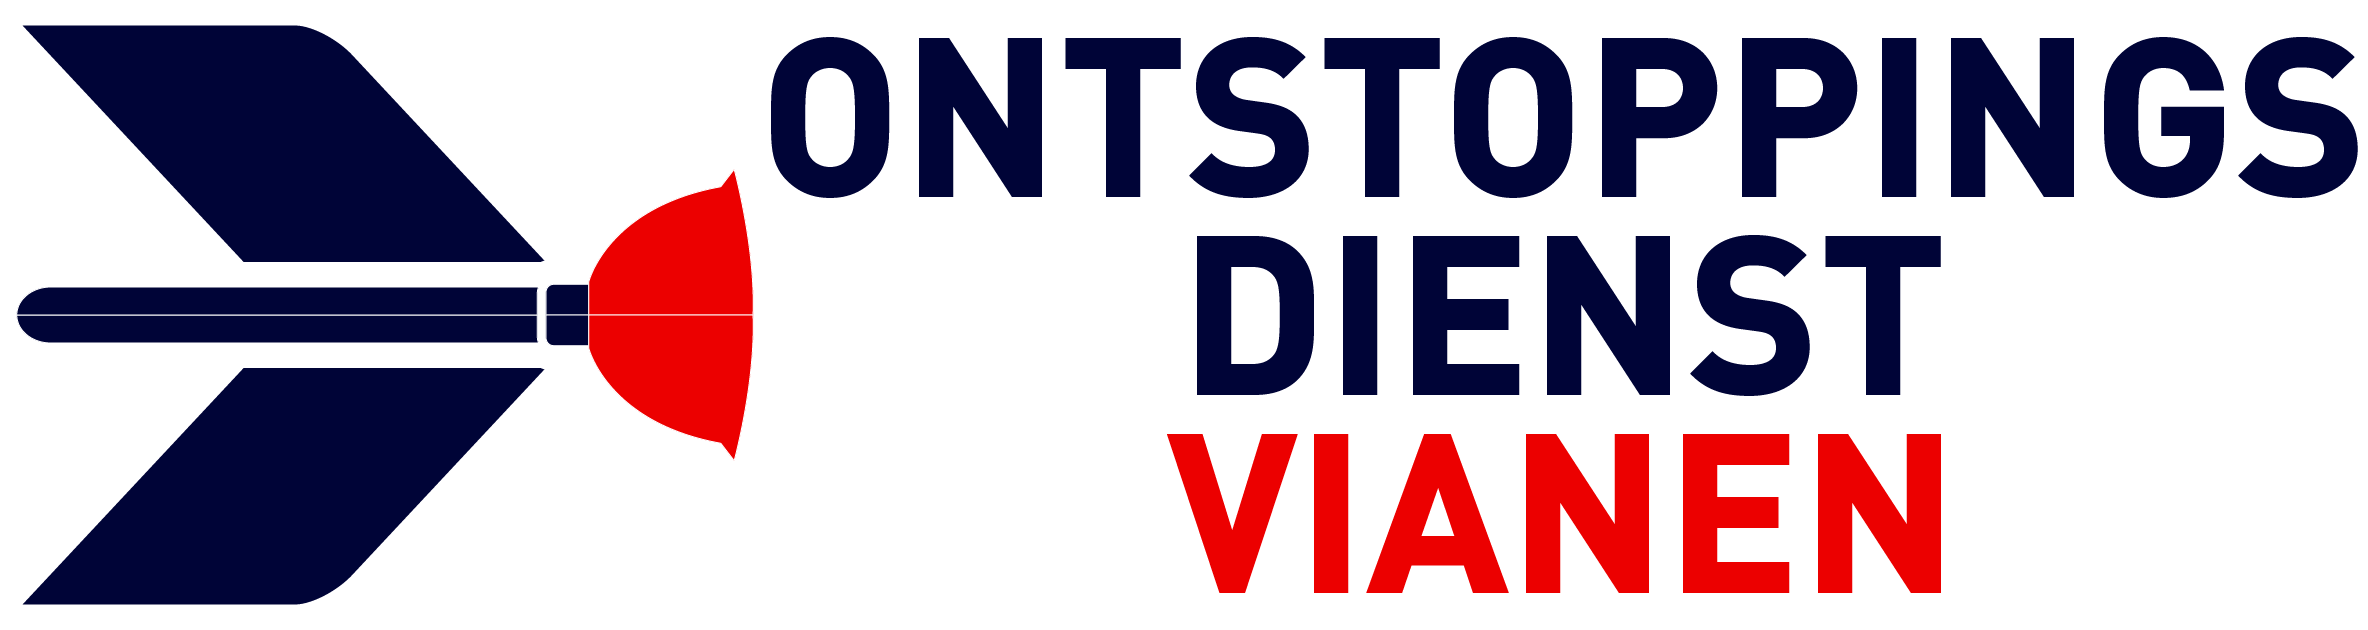 Ontstoppingsdienst Vianen logo